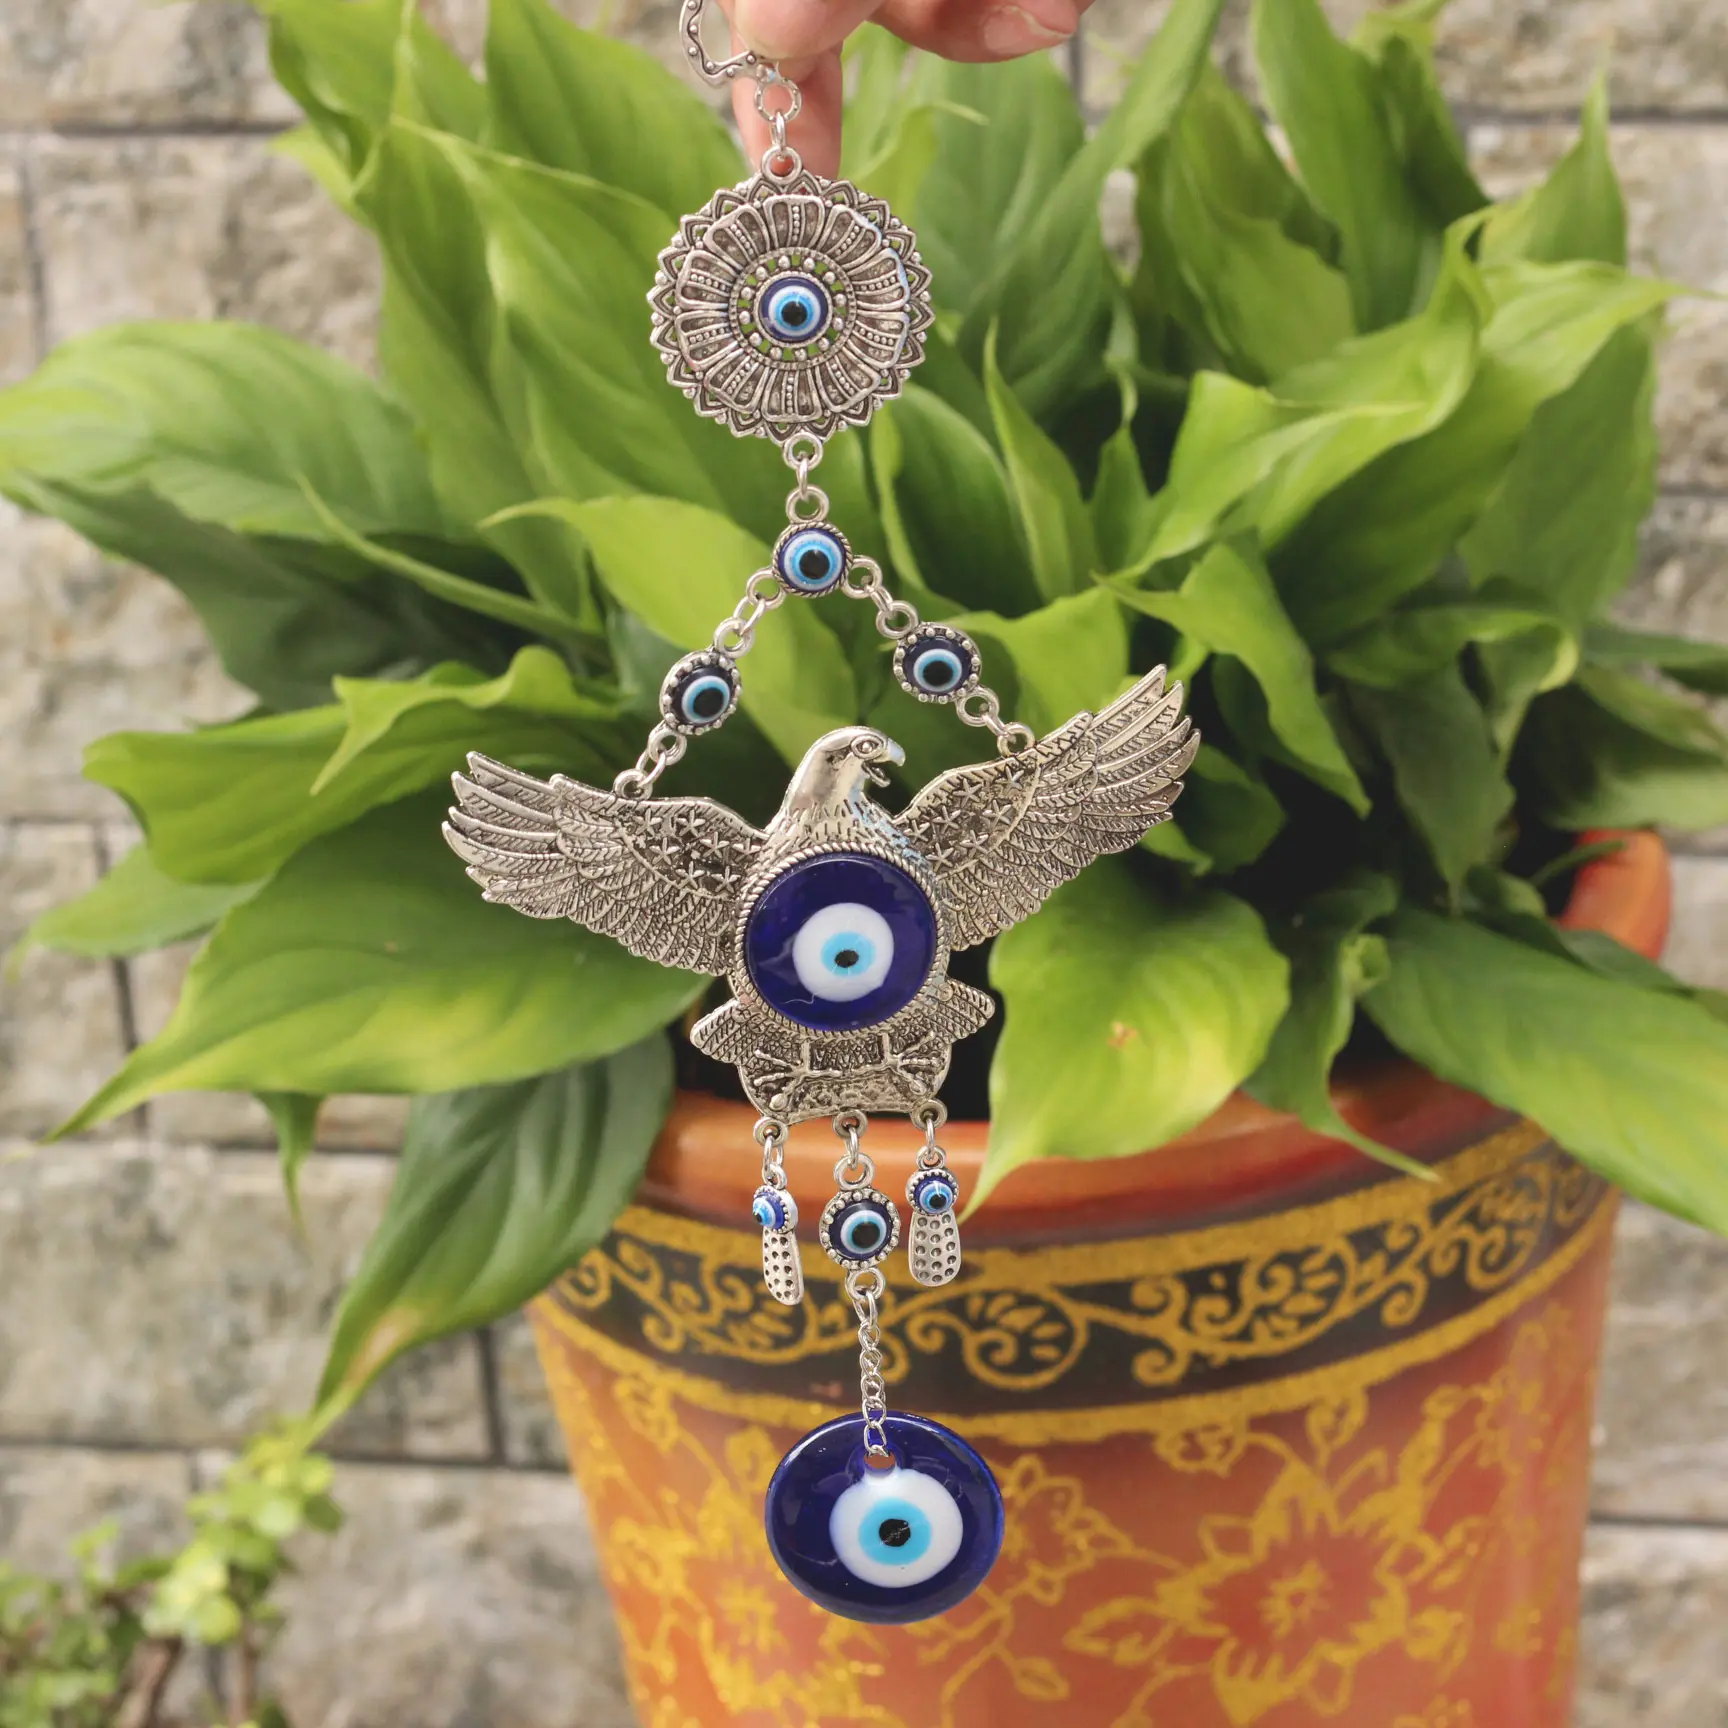 Hot Koop Kalkoen Nazar Blue Evil Eye Eagle Muur Opknoping Groothandel Exorcism Amulet Bless Veiligheid Ornament